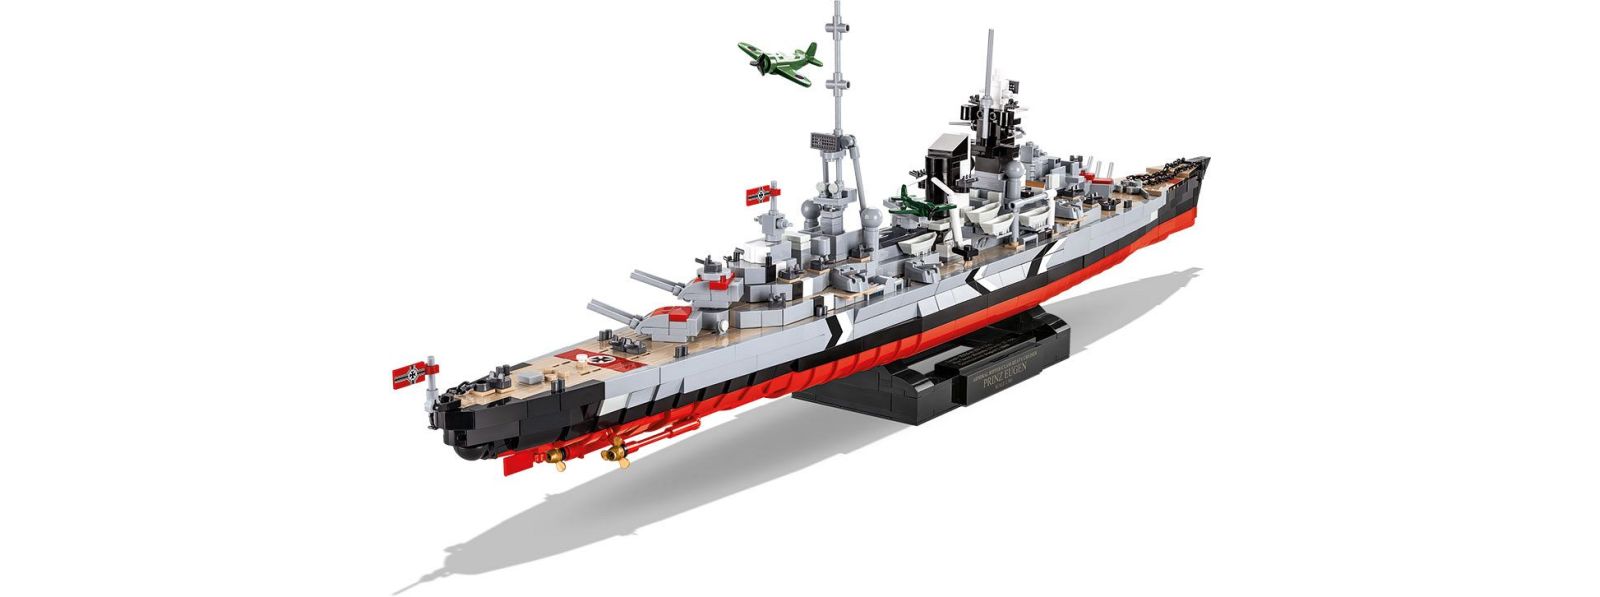 Vorverkauf Prinz Eugen Limited Edition!